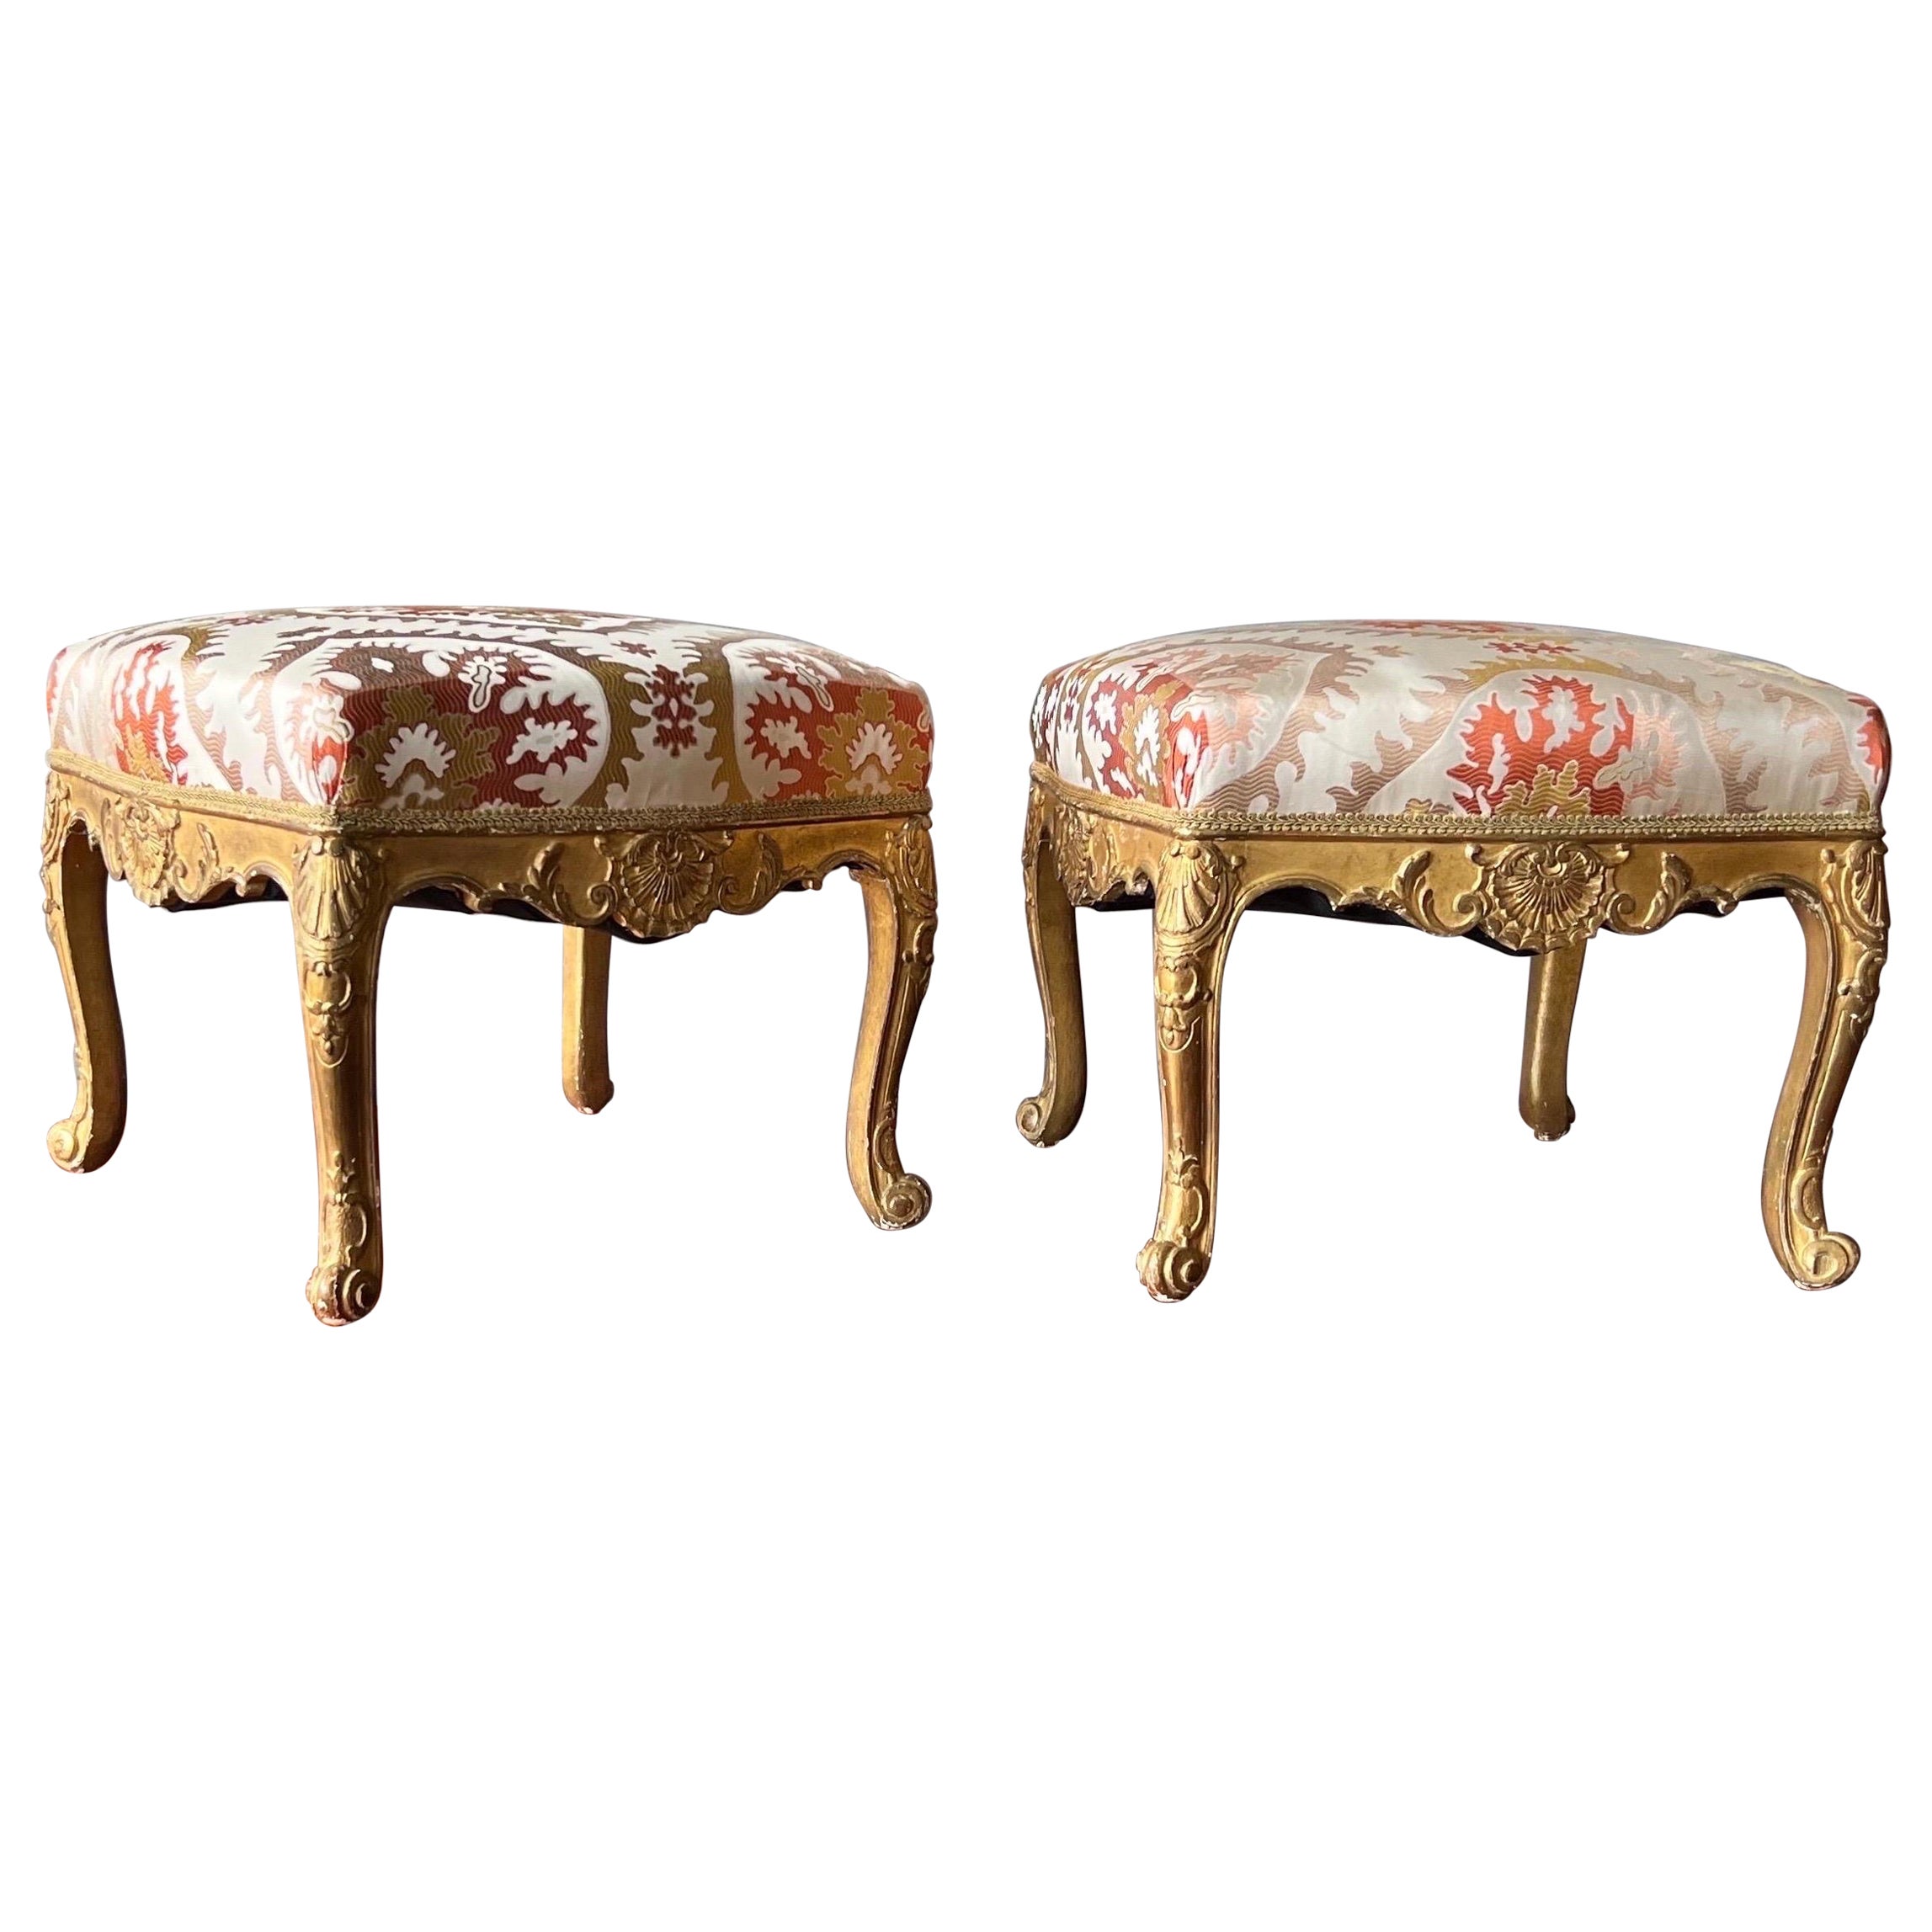 Fantastique paire de tabourets français en or doré du 18ème-19ème siècle